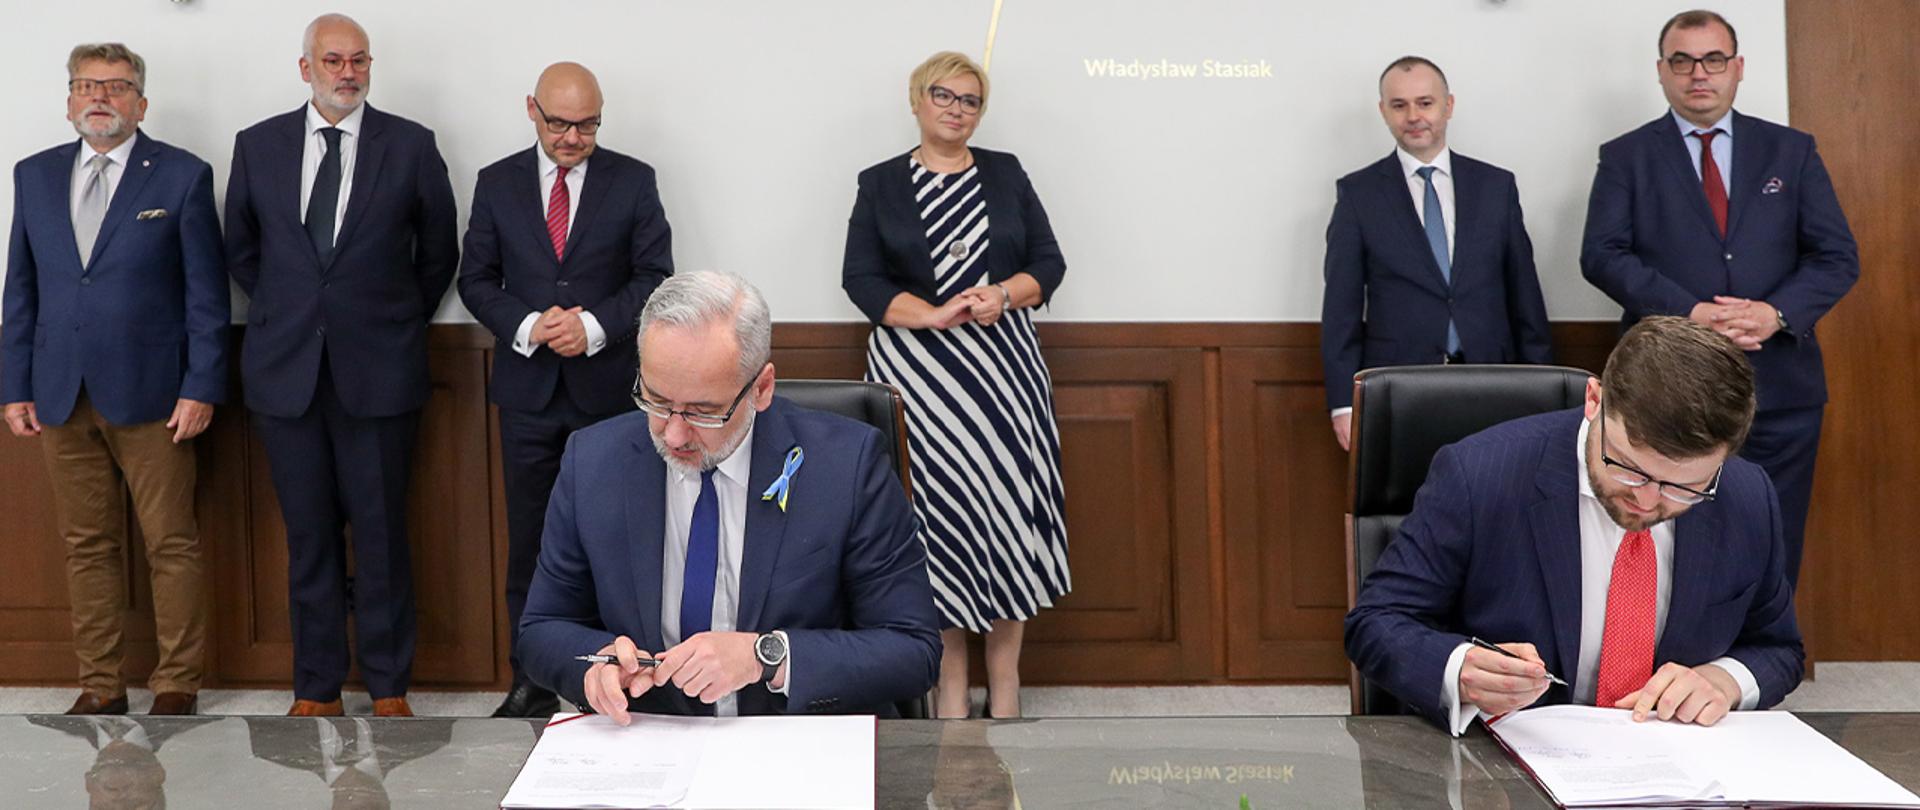 Przy stole siedzą wiceminister Andrzej Śliwka i minister Adam Niedzielski, podpisują dokumenty. W tle inni uczestnicy spotkania. 